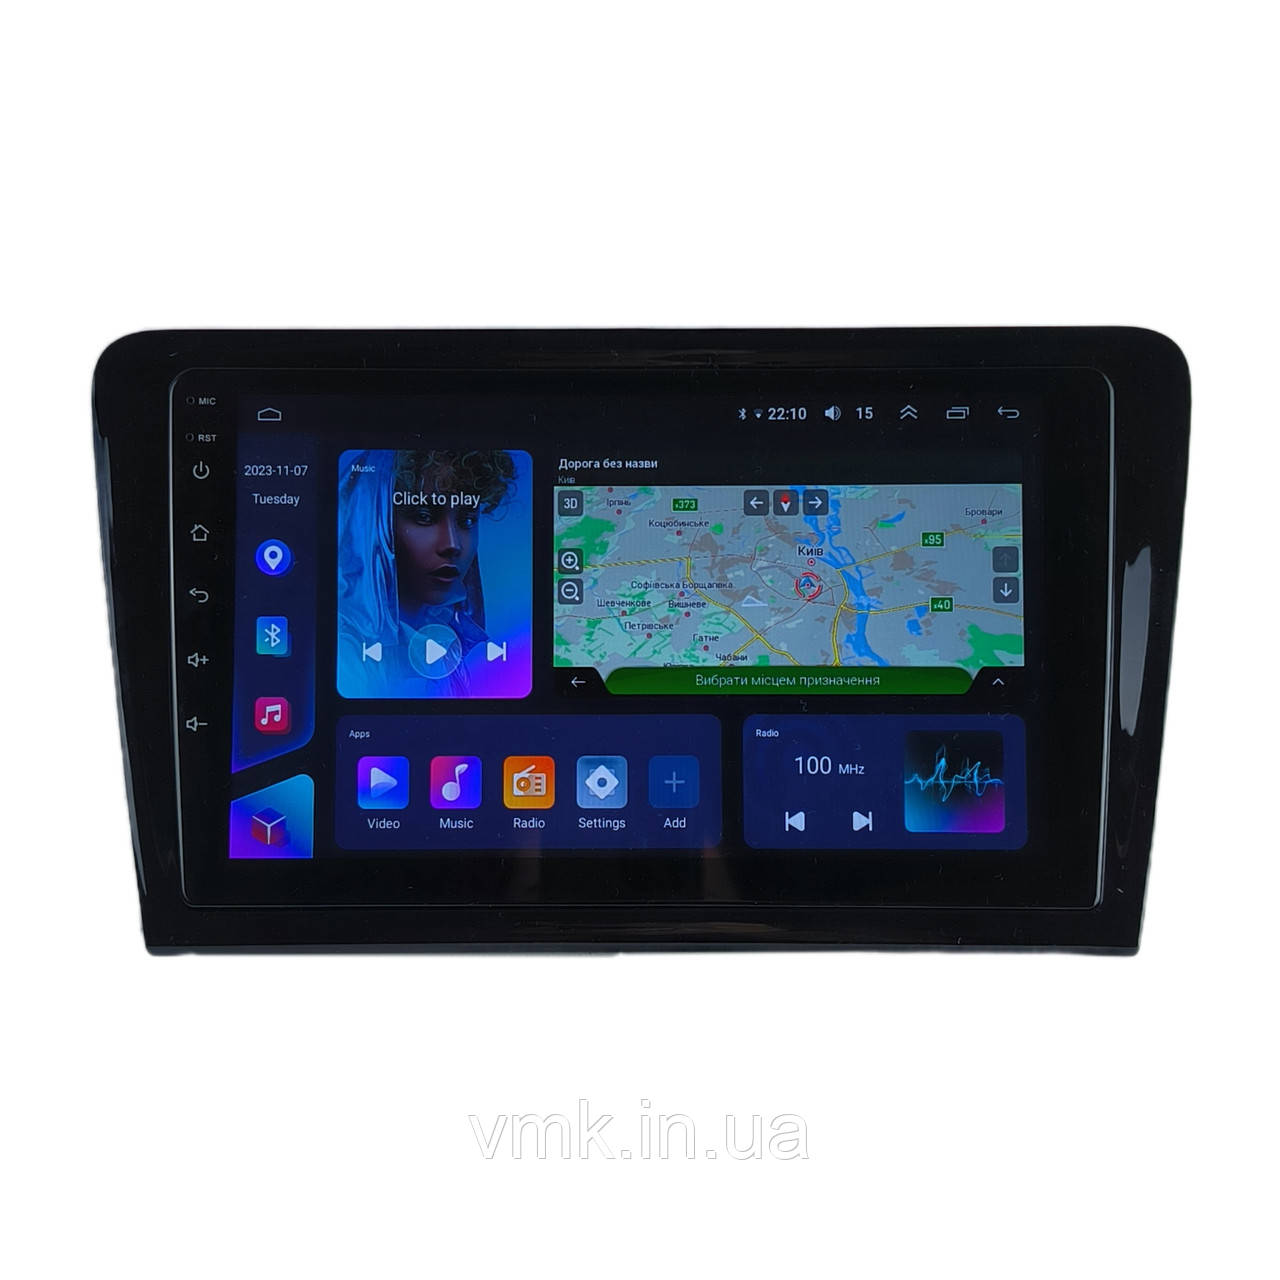 Штатна Магнітола VW Bora 2012-2015 з Android 8.1 з Екраном 9 дюймів (М-ФБр-9) 2/32 ГБ 4G